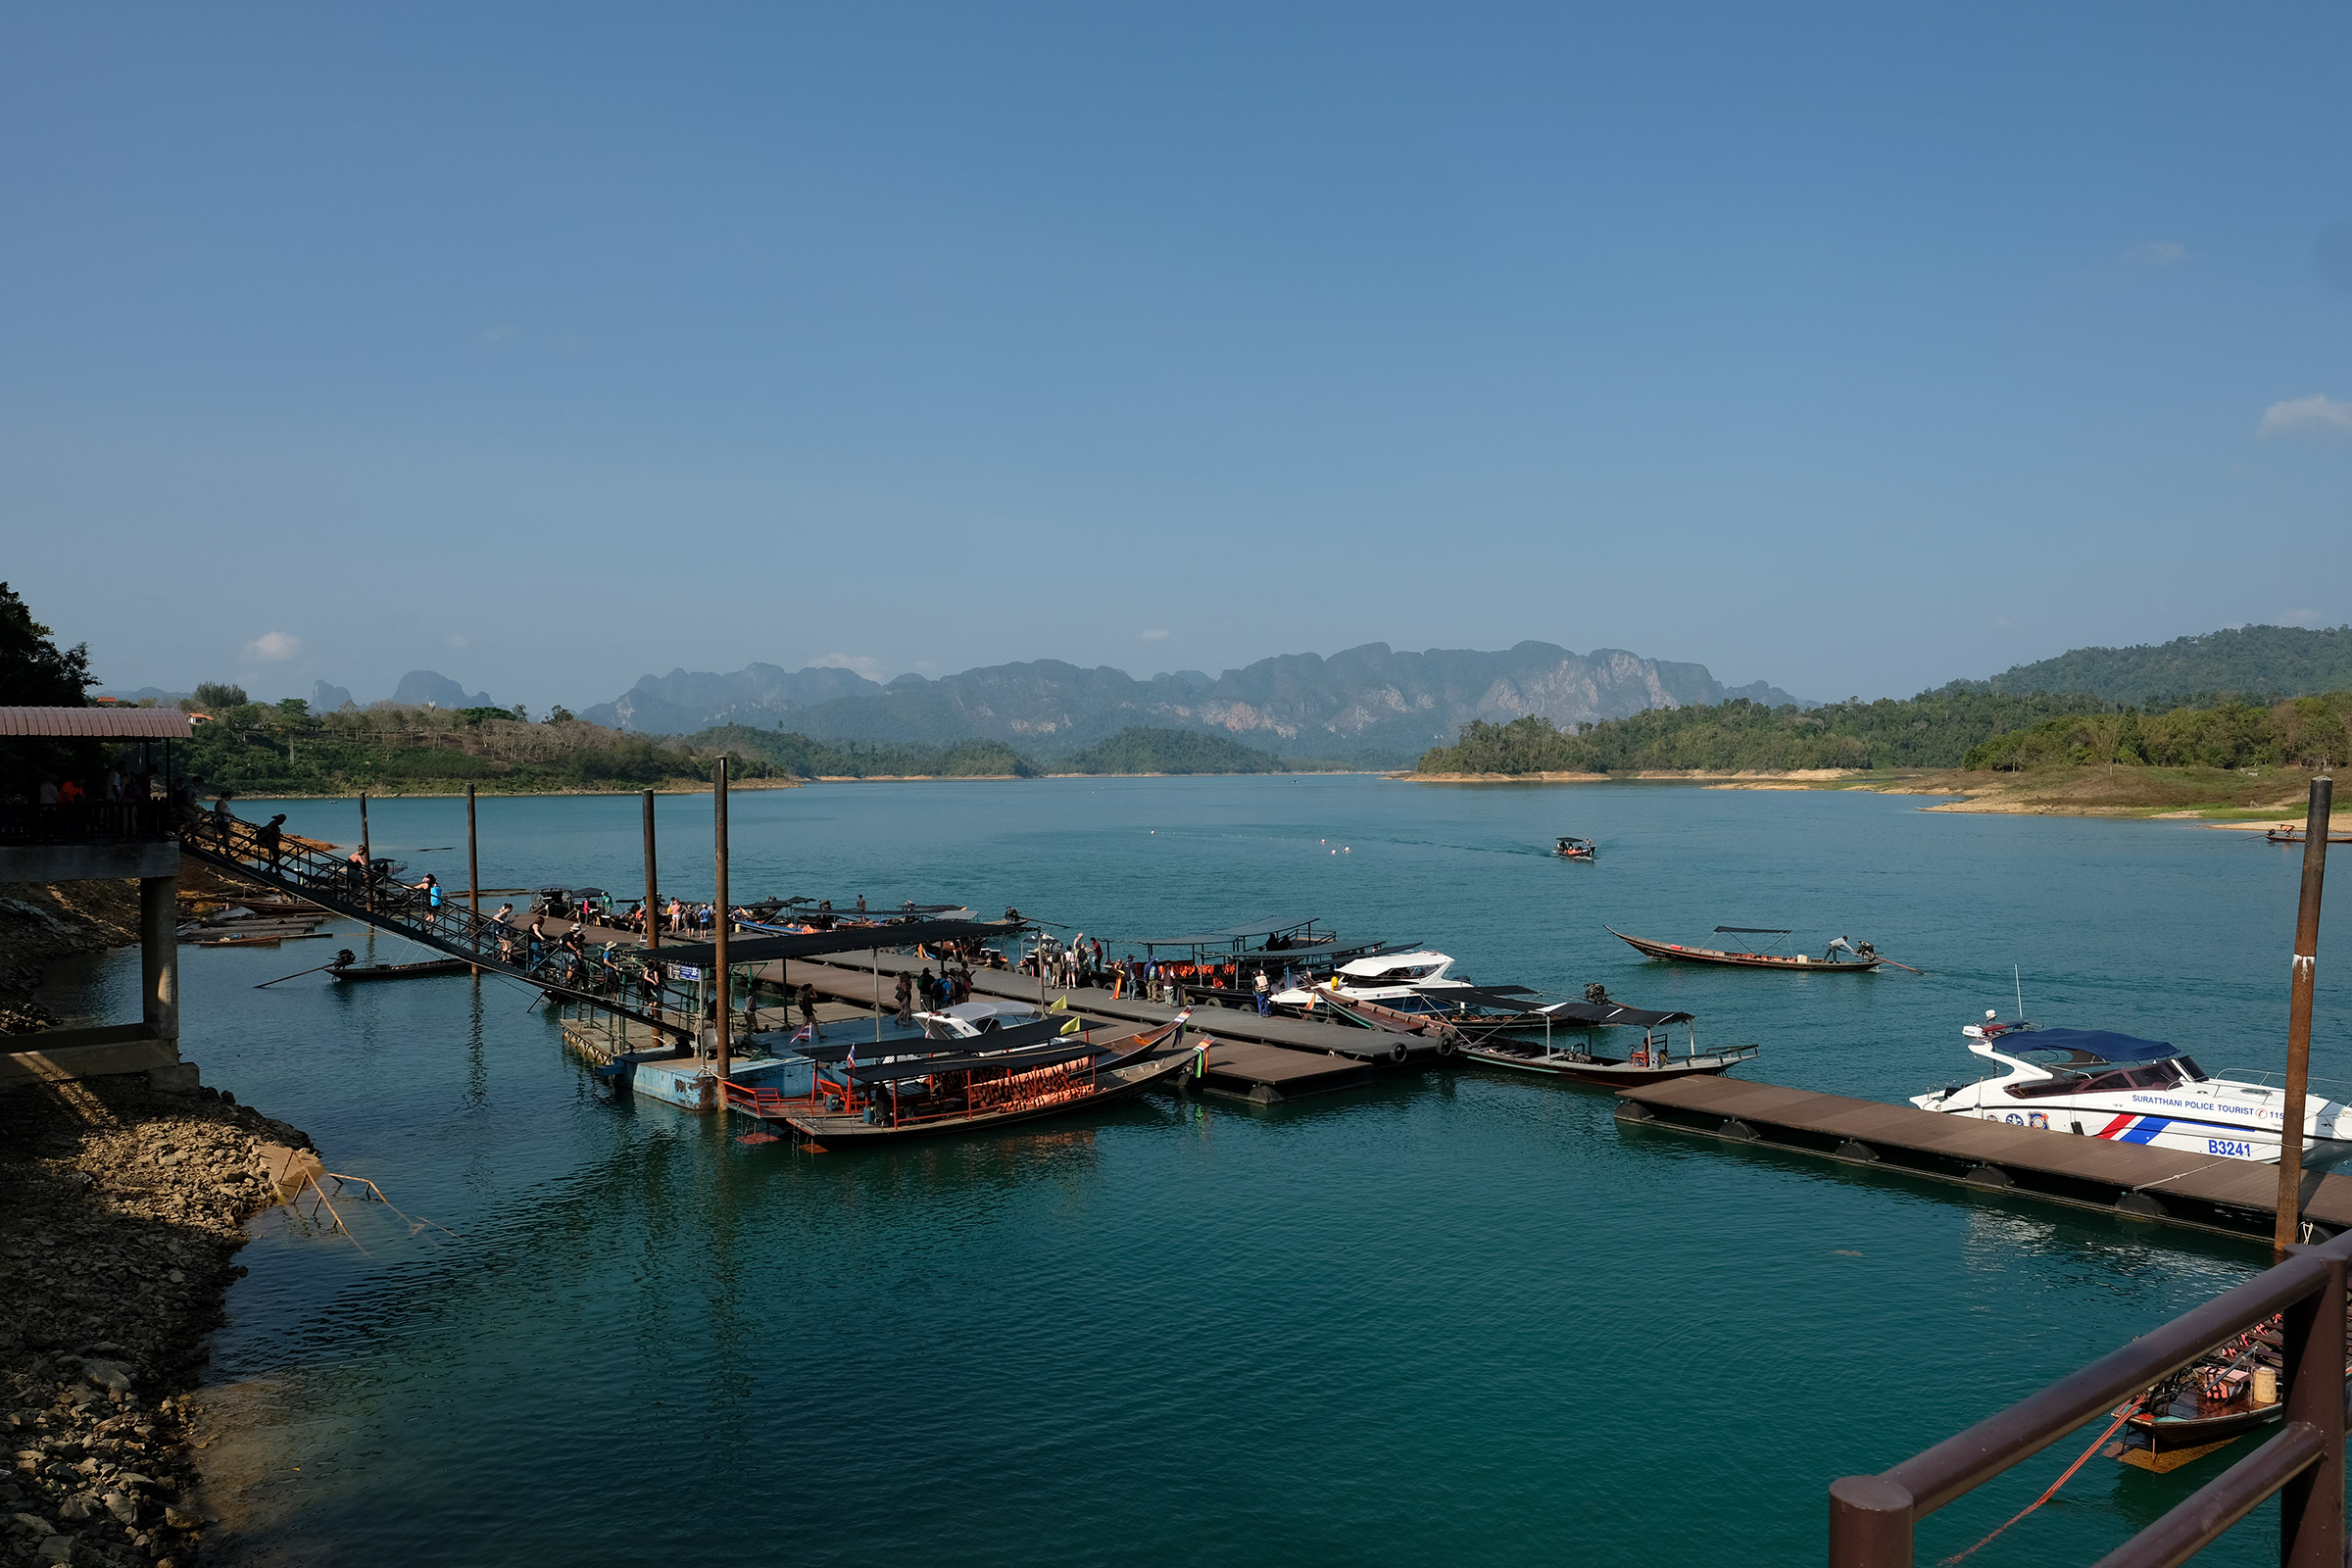 Arriving at Cheow Lan - Khao Sok lake